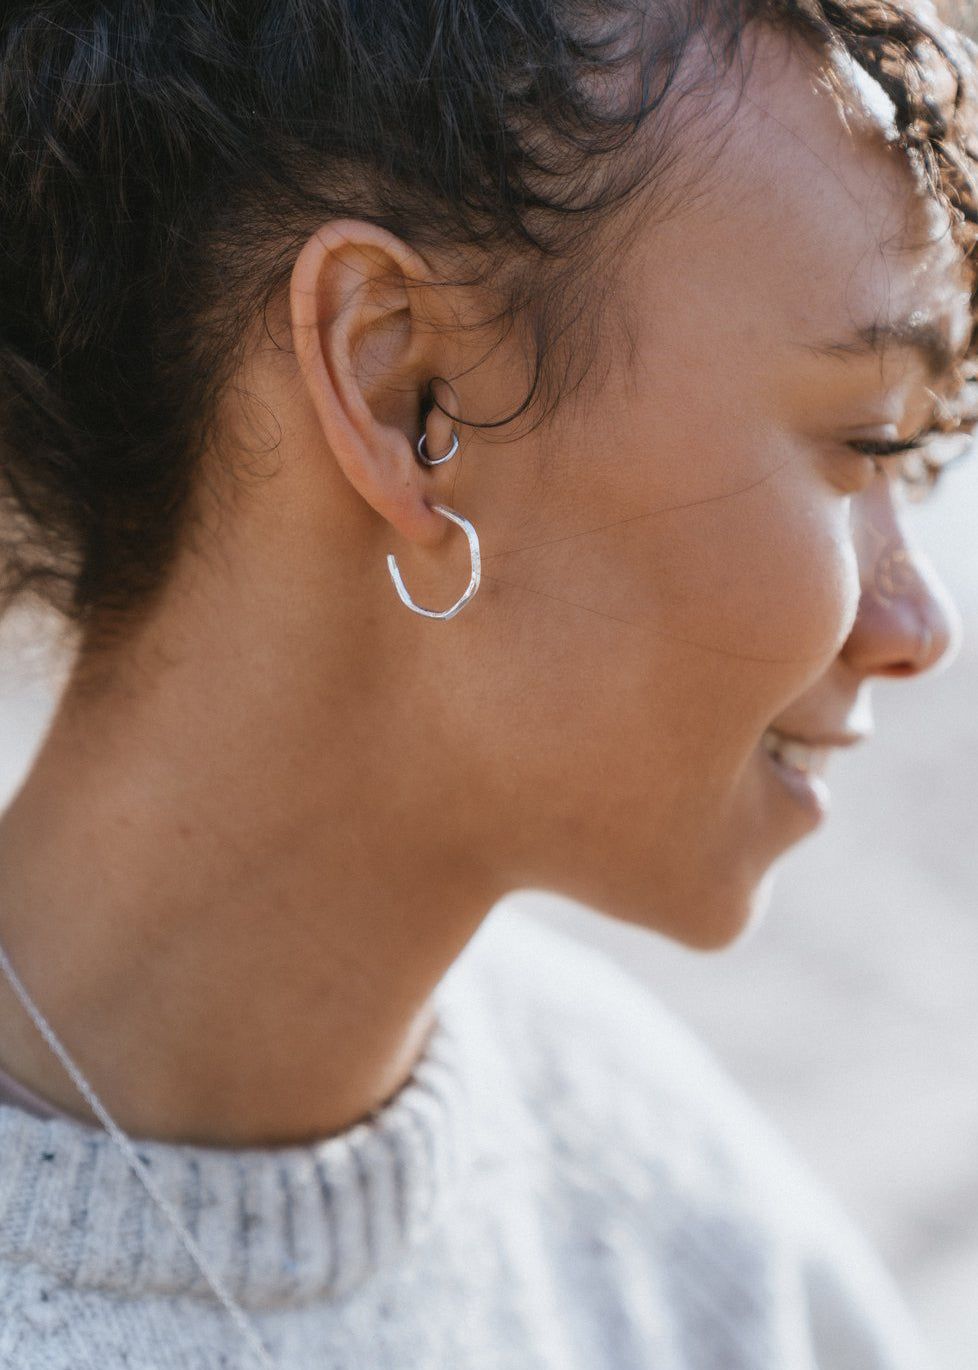 Midi Hoop Earrings by DaisyV Jewellery